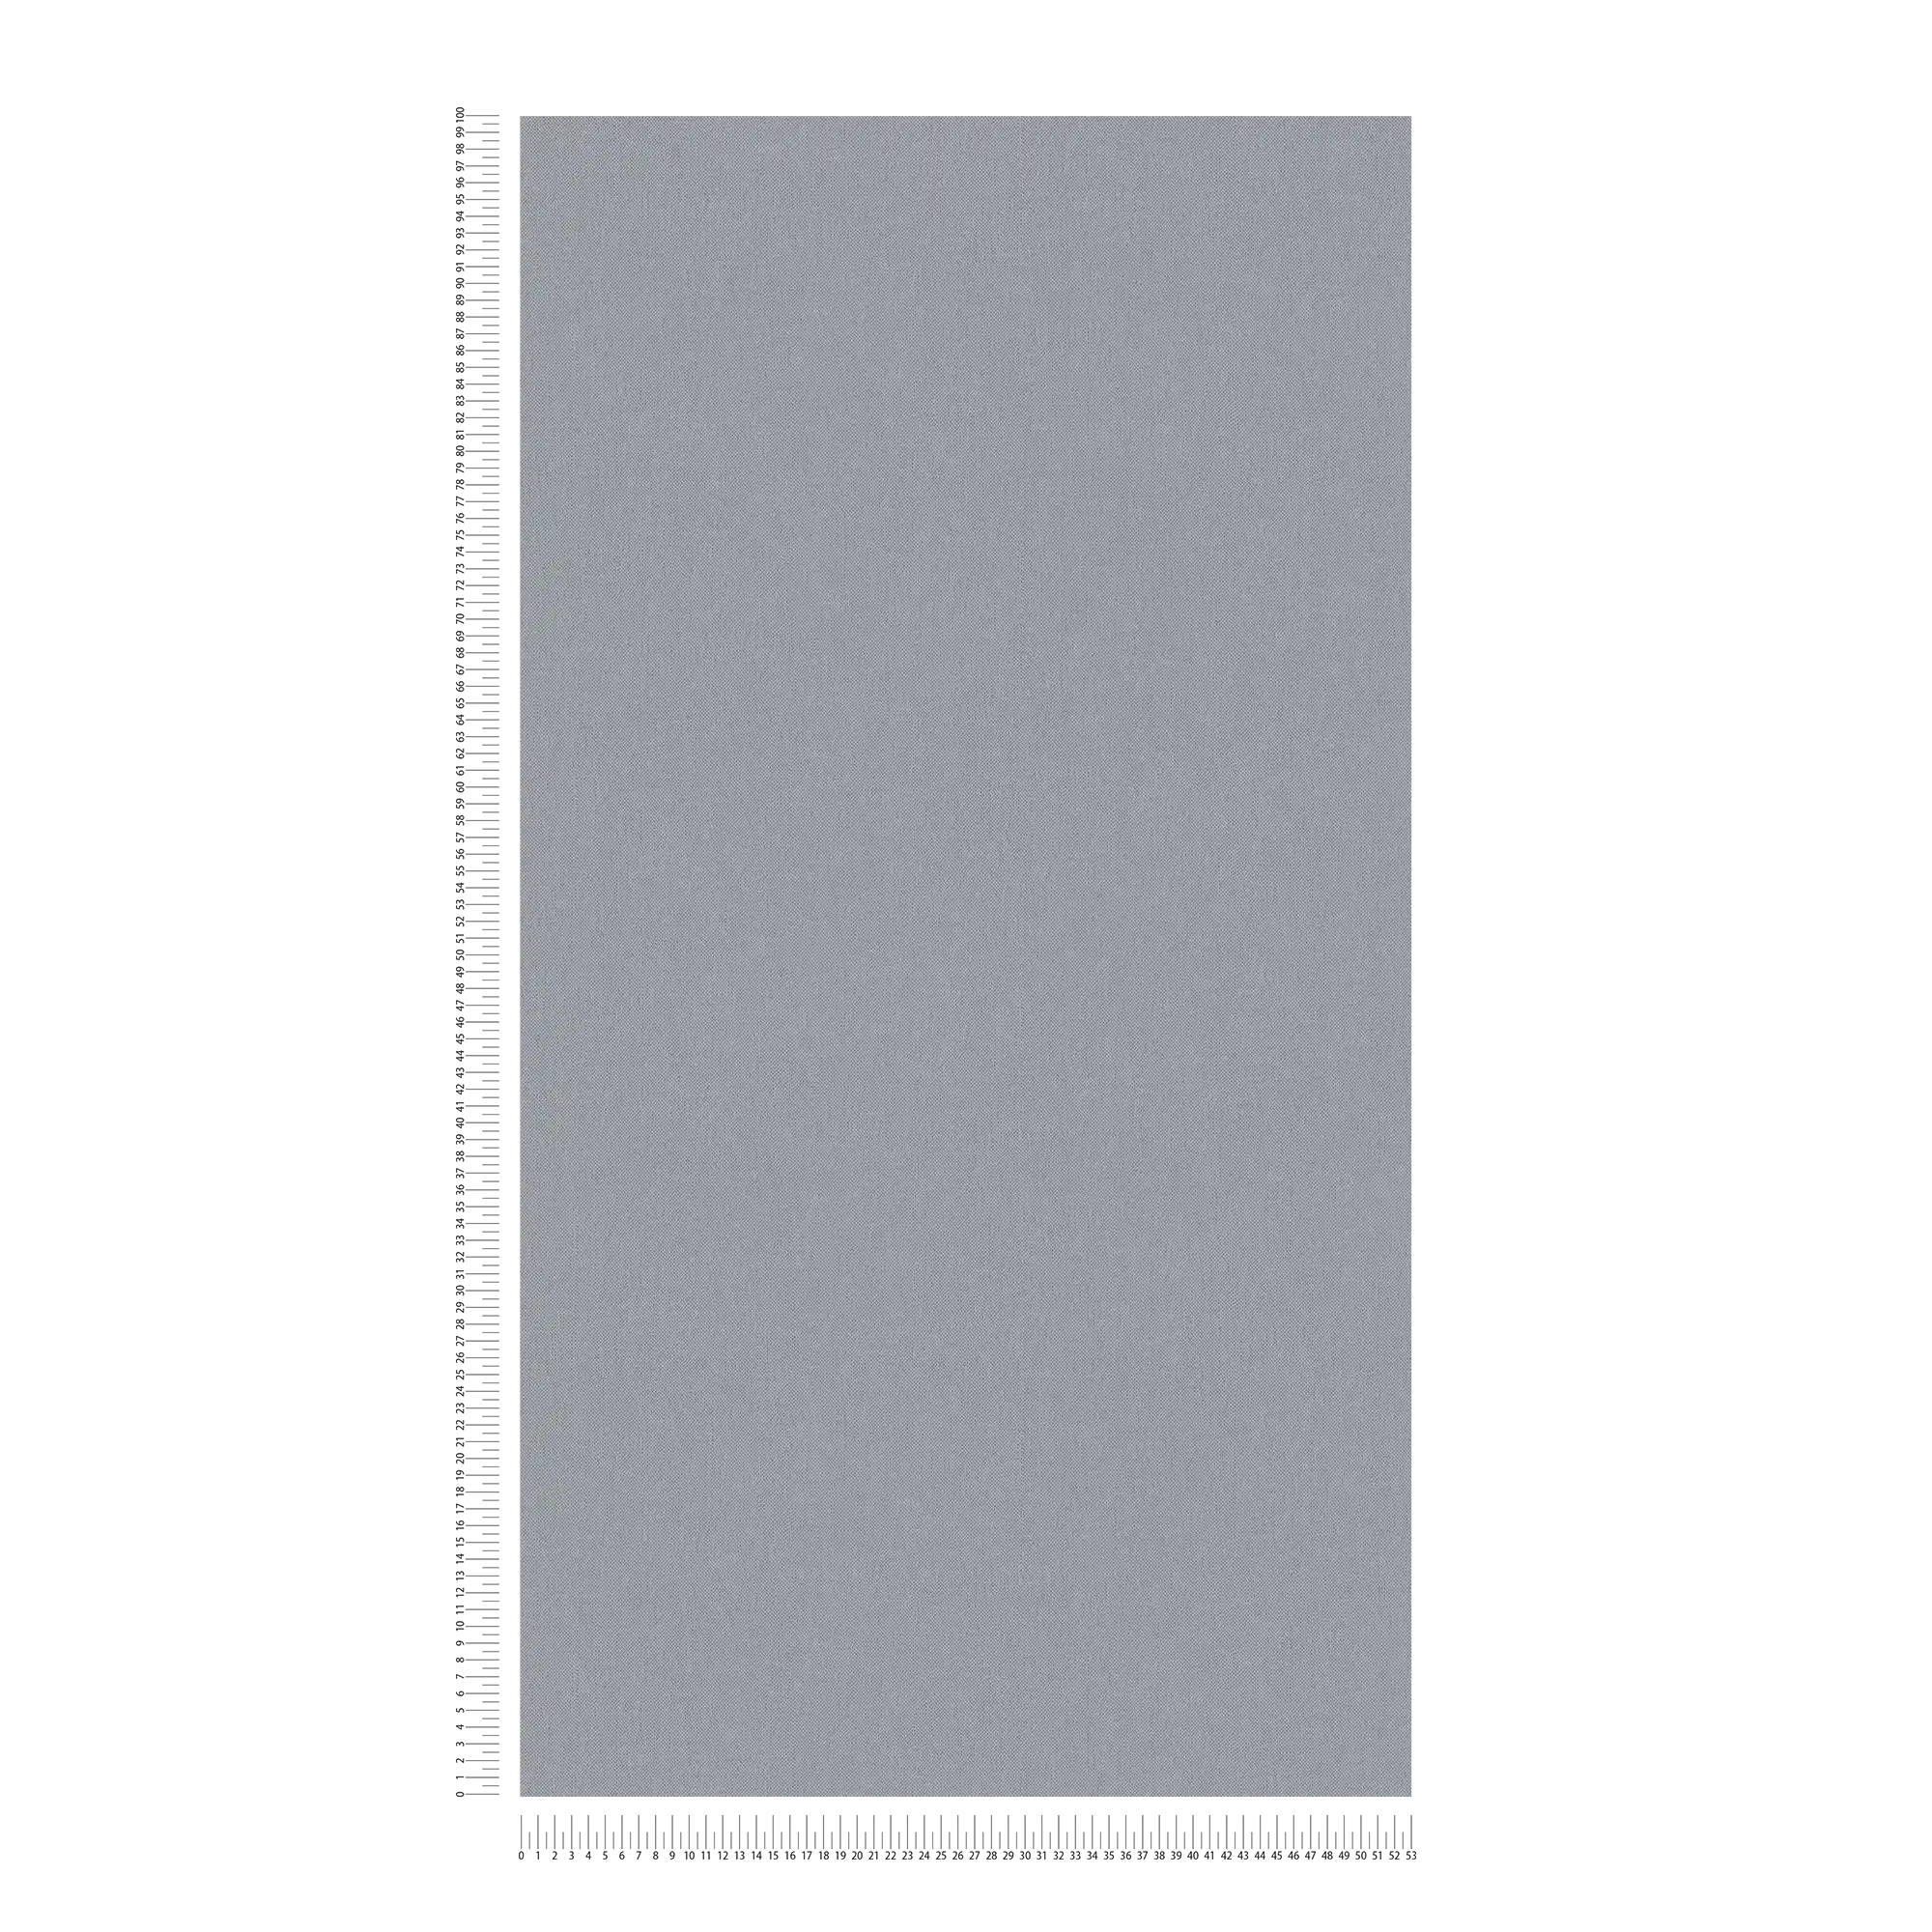             Papel pintado de aspecto de lino gris con estructura de tela y superficie mate
        